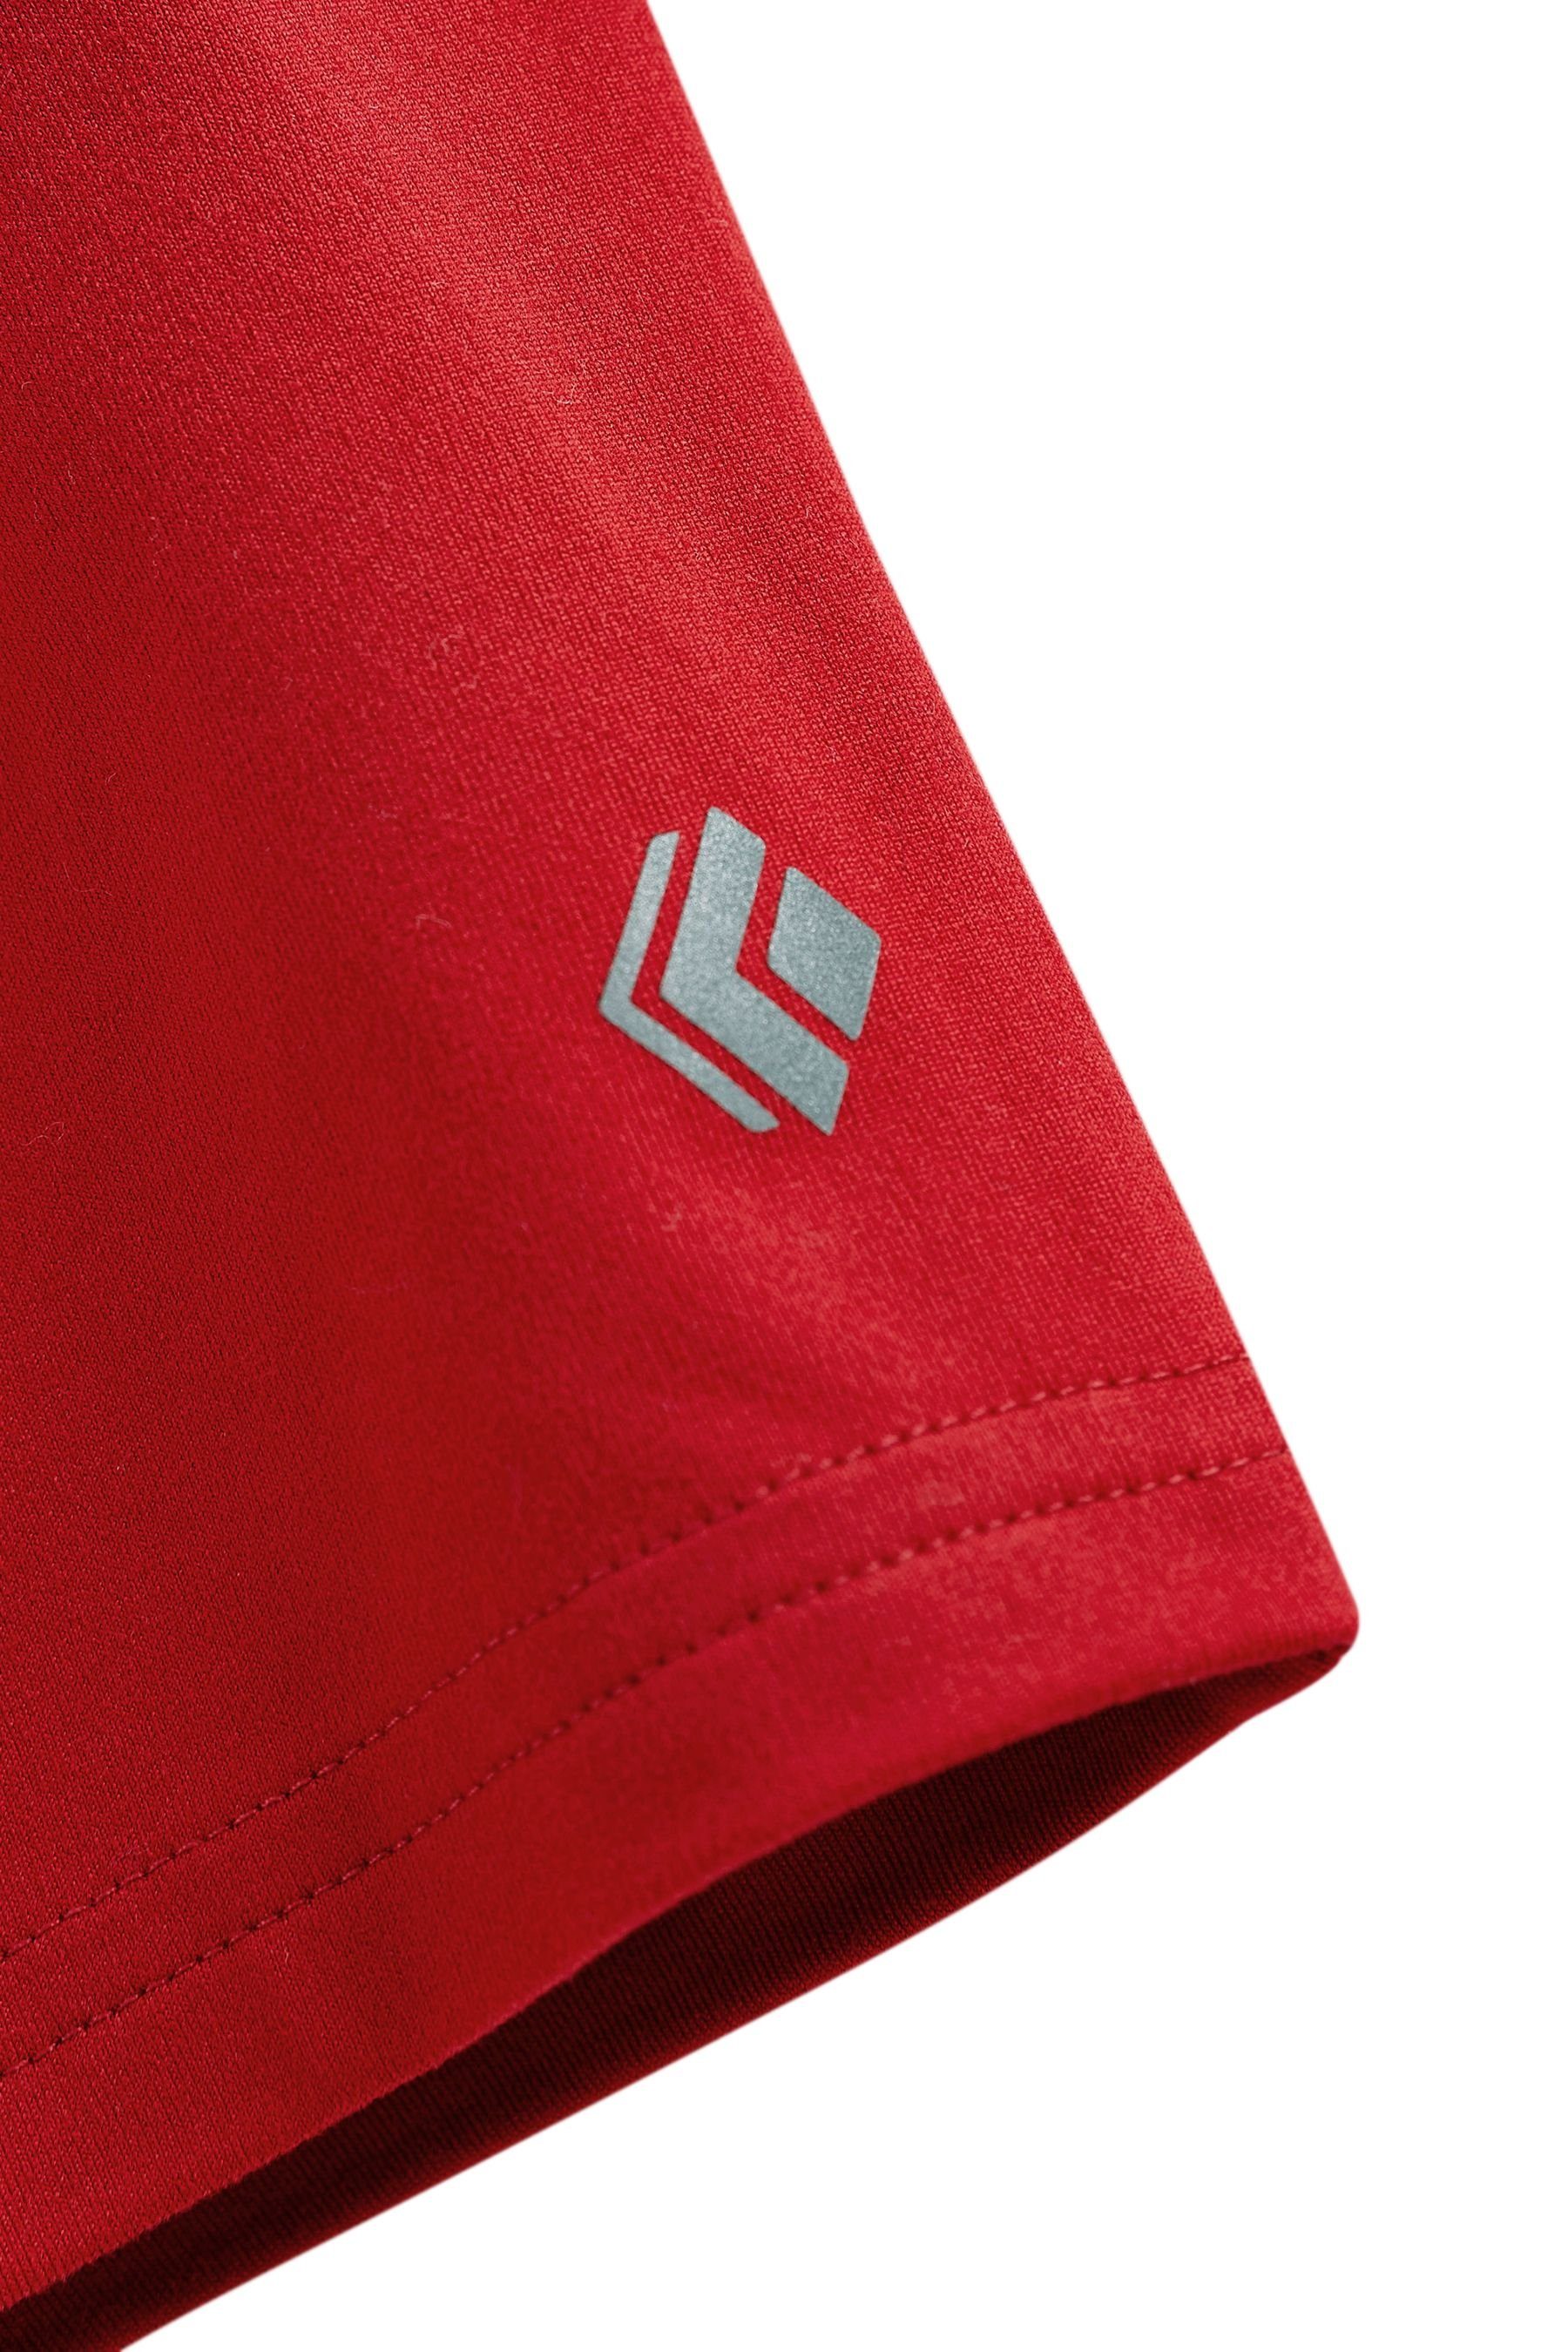 Next Sweatshorts Red - Sport-Shorts Burgundy 1er-Pack Leichte (1-tlg)